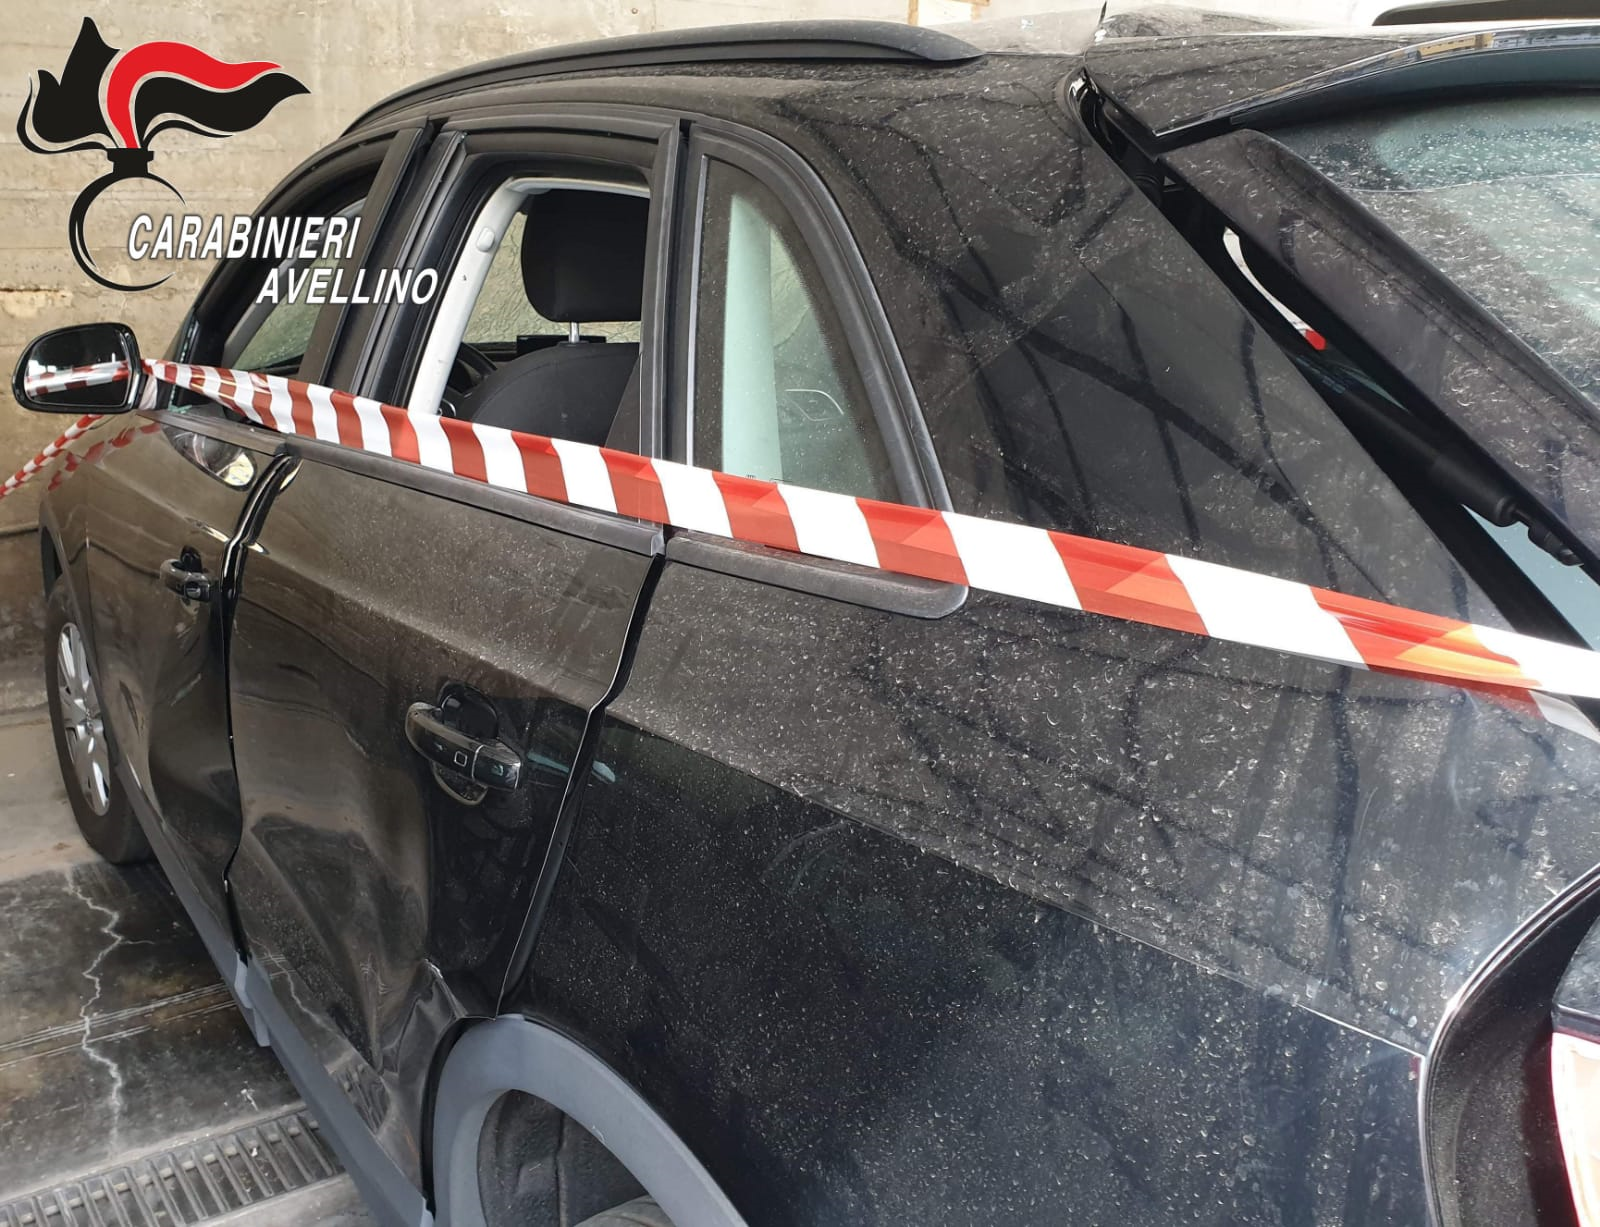 Avellino| Ordigno rudimentale fatto esplodere nell’Audi di un imprenditore, paura nella notte a rione Mazzini